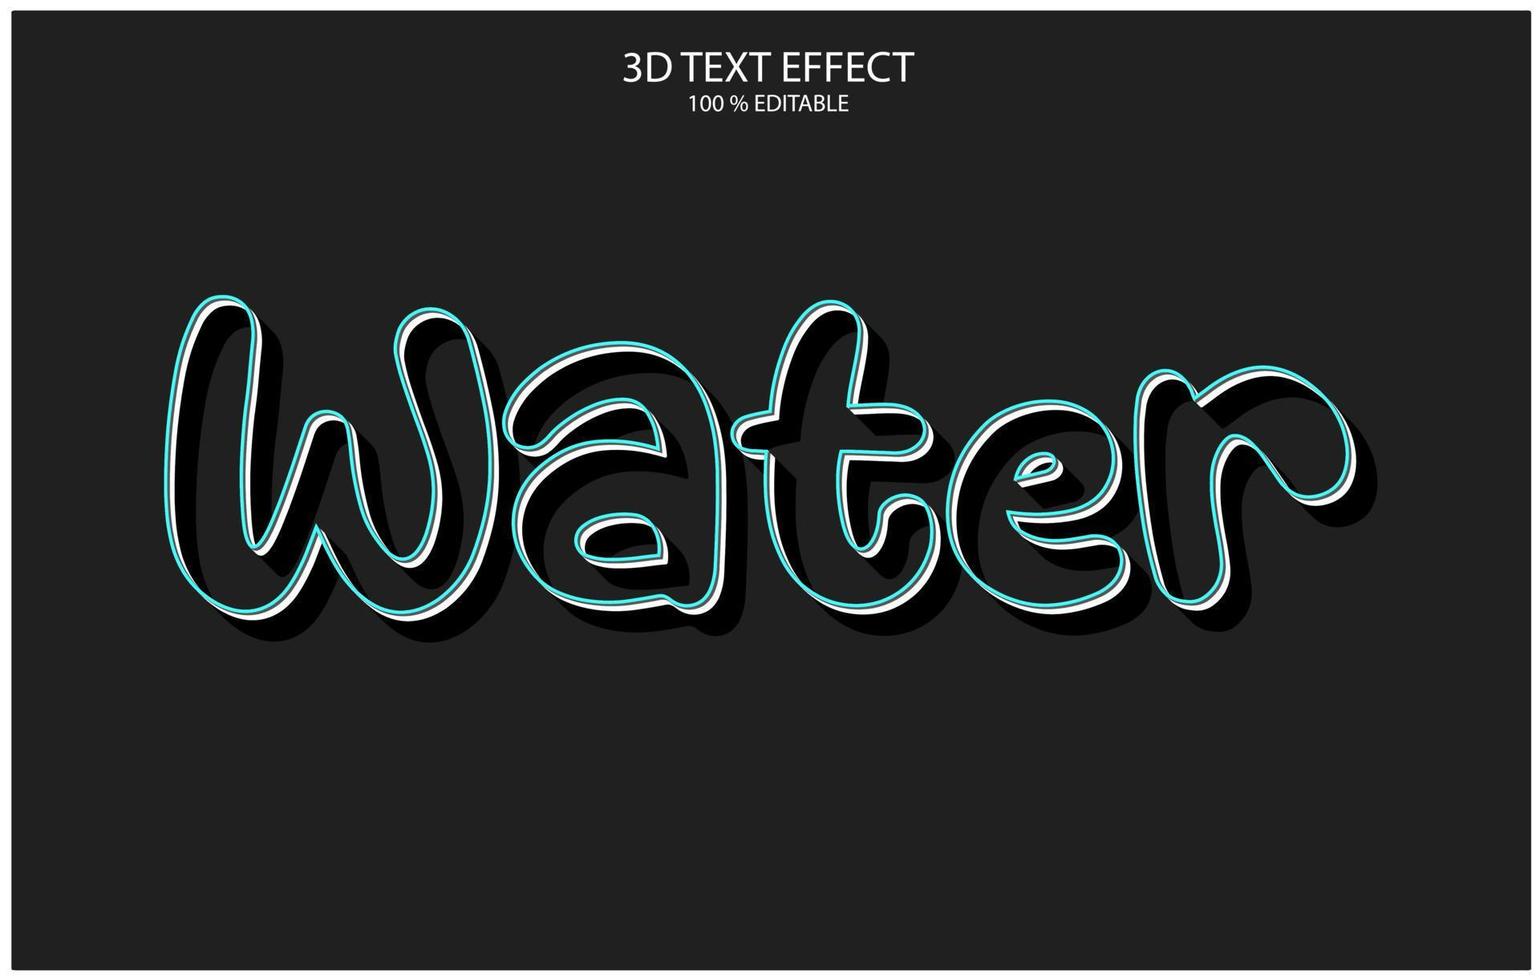 efeito de texto 3d editável, estilo de efeito de texto, modelo de efeito de texto editável de água vetor